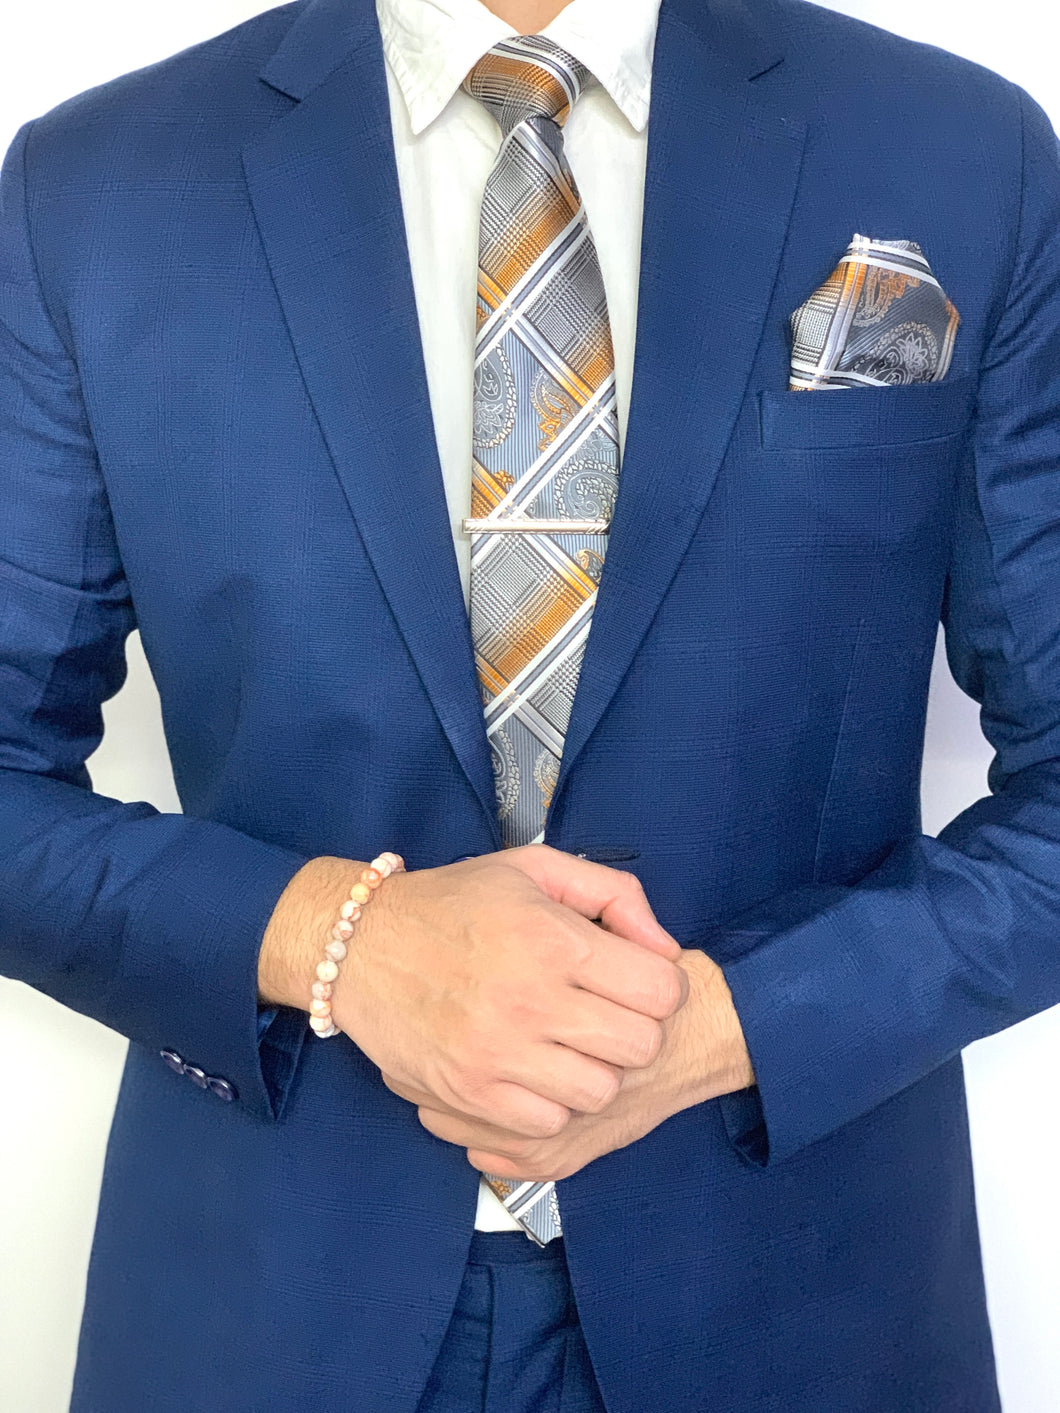 Secrety - Complete Necktie Set